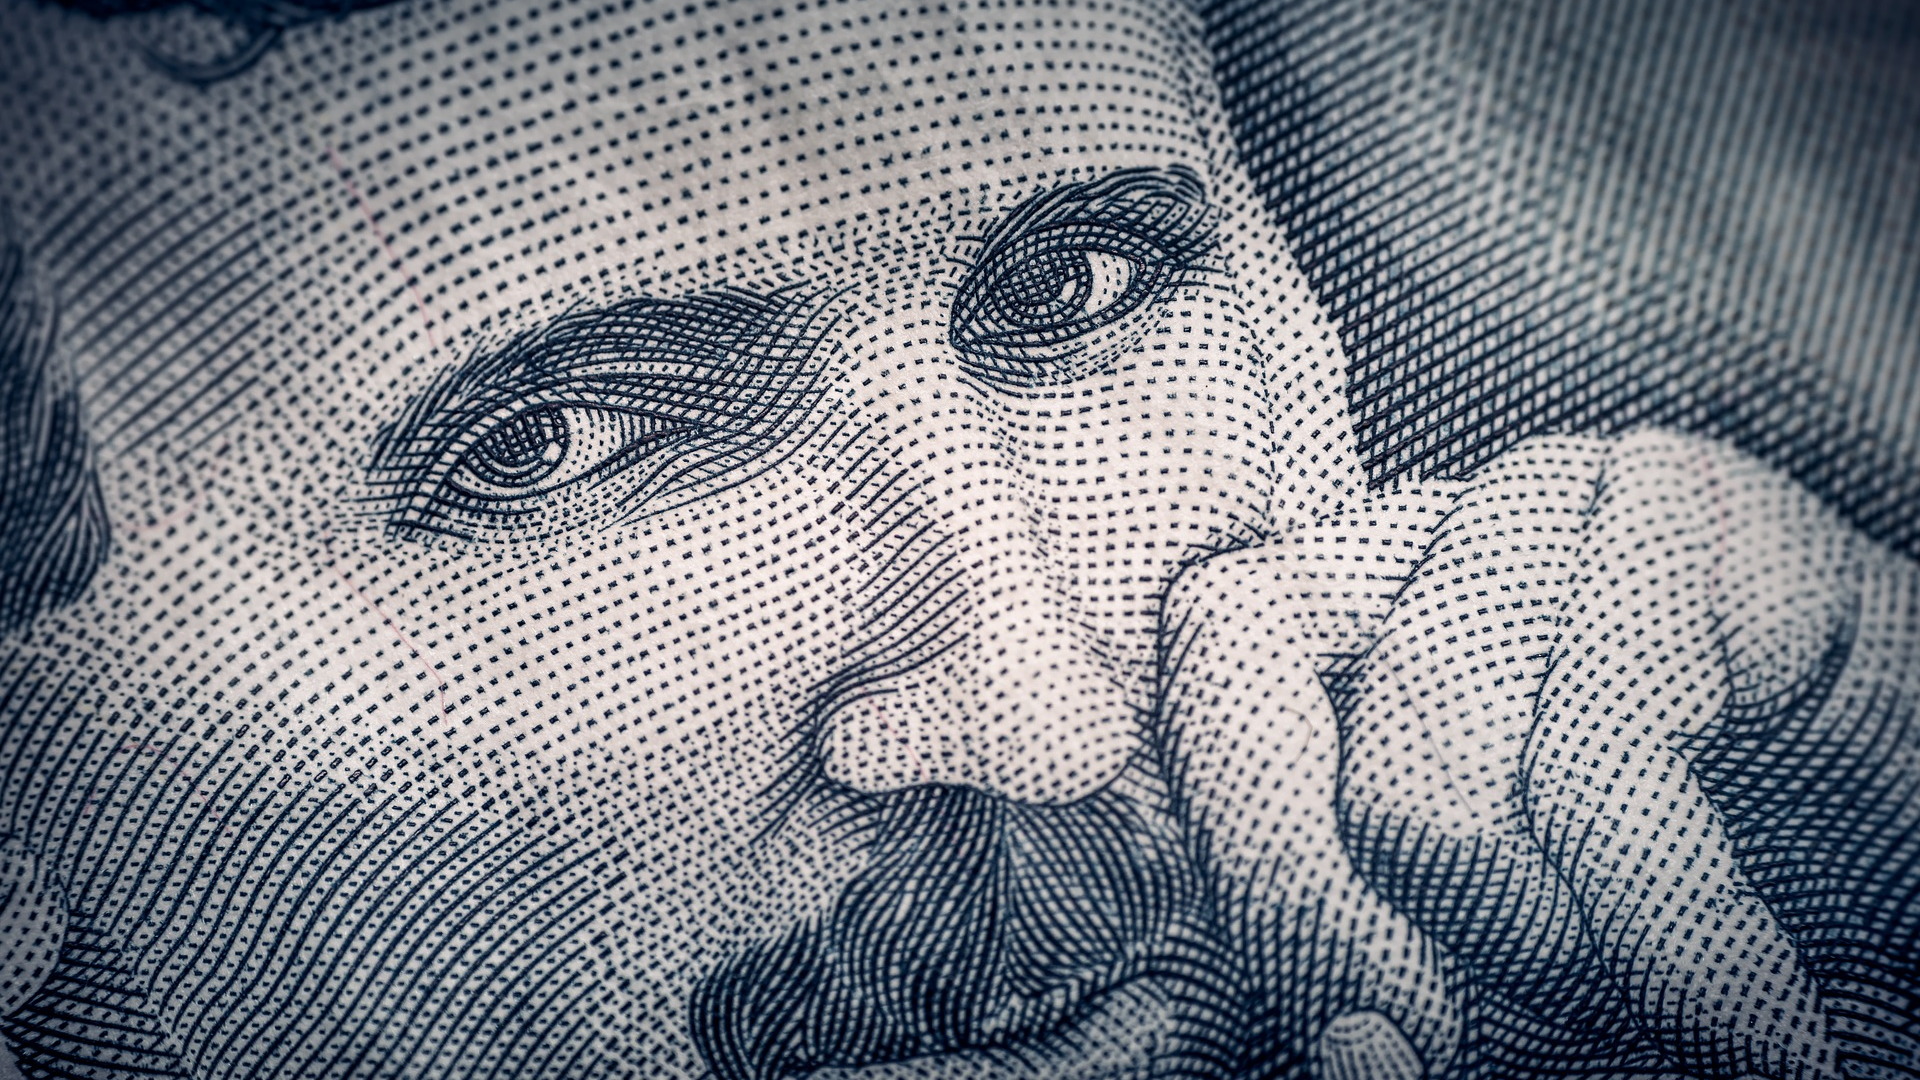 Nikola Tesla on Serbian dinar banknote